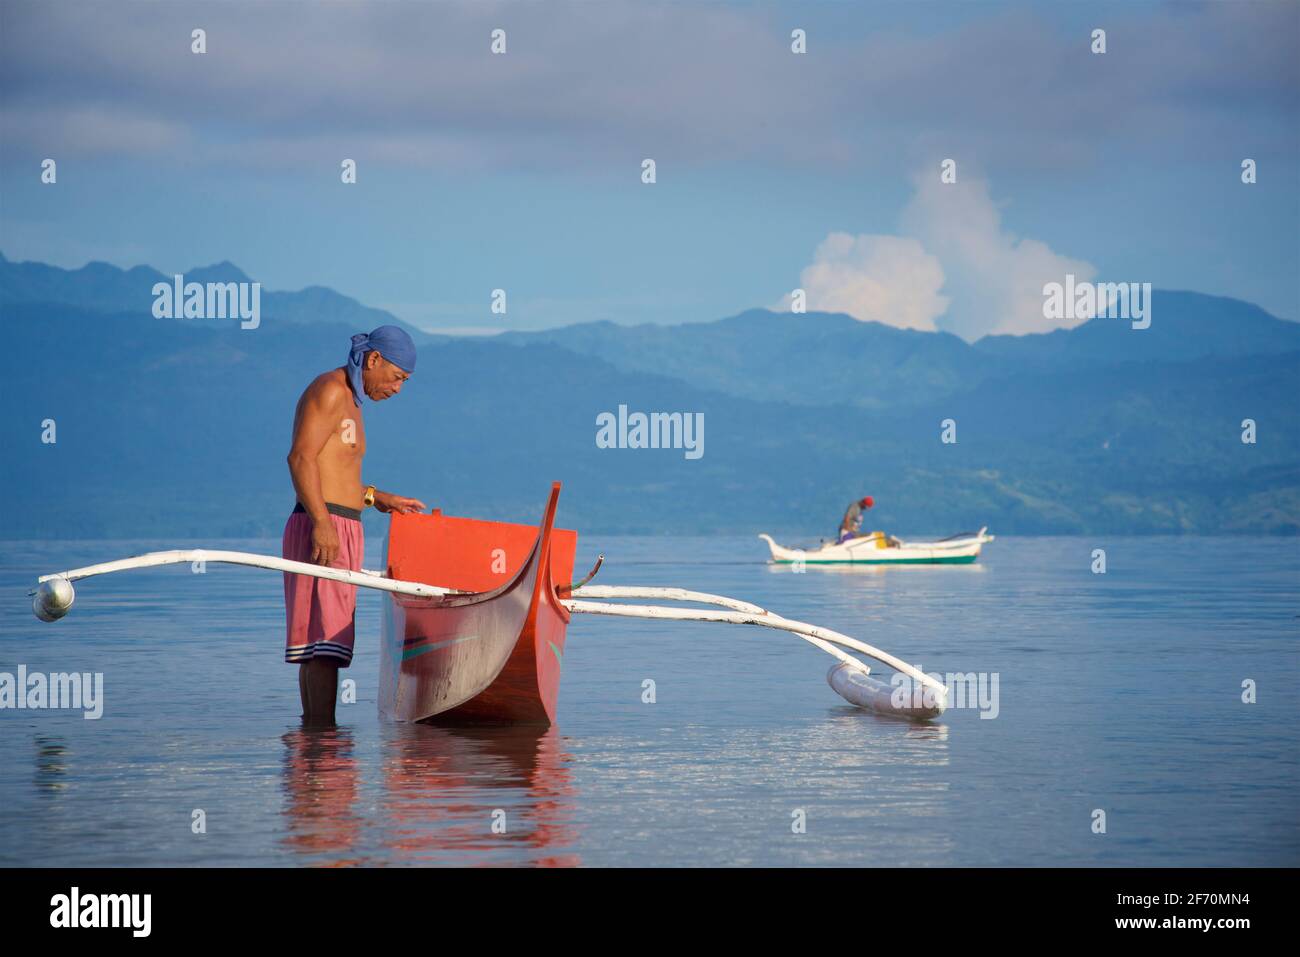 Le pêcheur philippin se prépare à prendre son canot en saillie pour pêcher dans la mer de Visayan au large de Moalboal, île de Cebu, Philippines. Banque D'Images